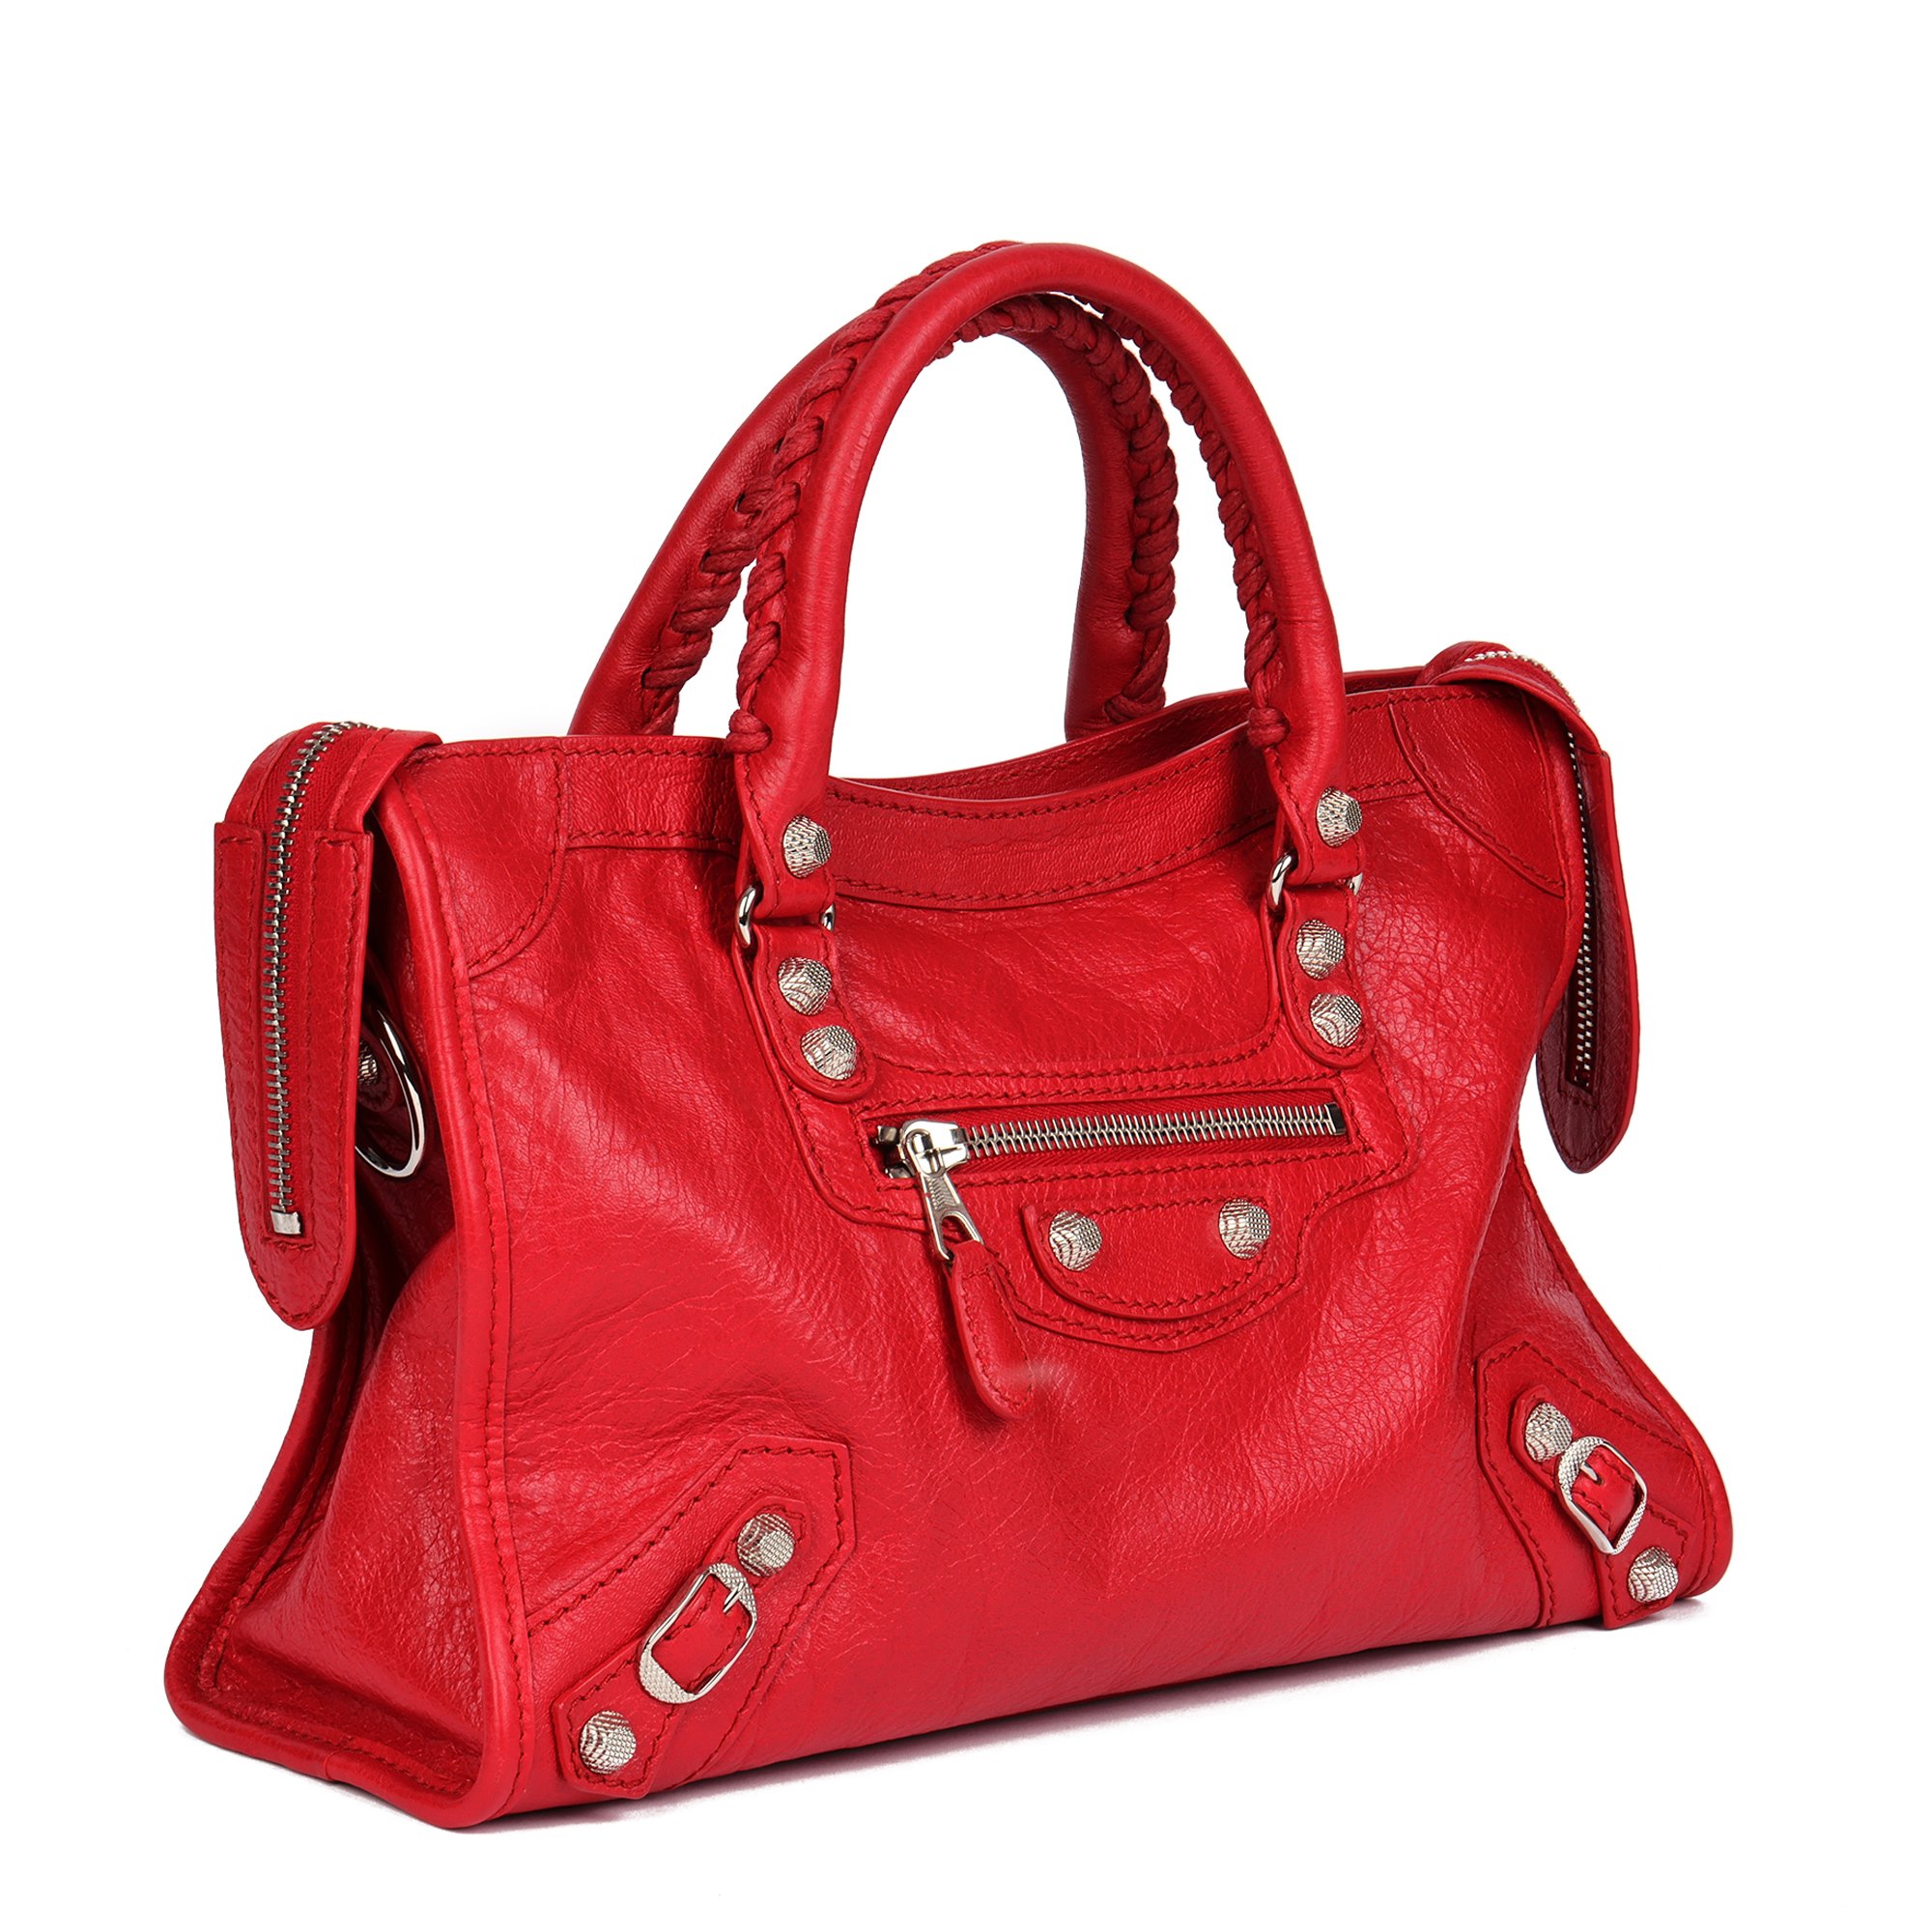 Balenciaga Red Aged Lambskin Small City Bag